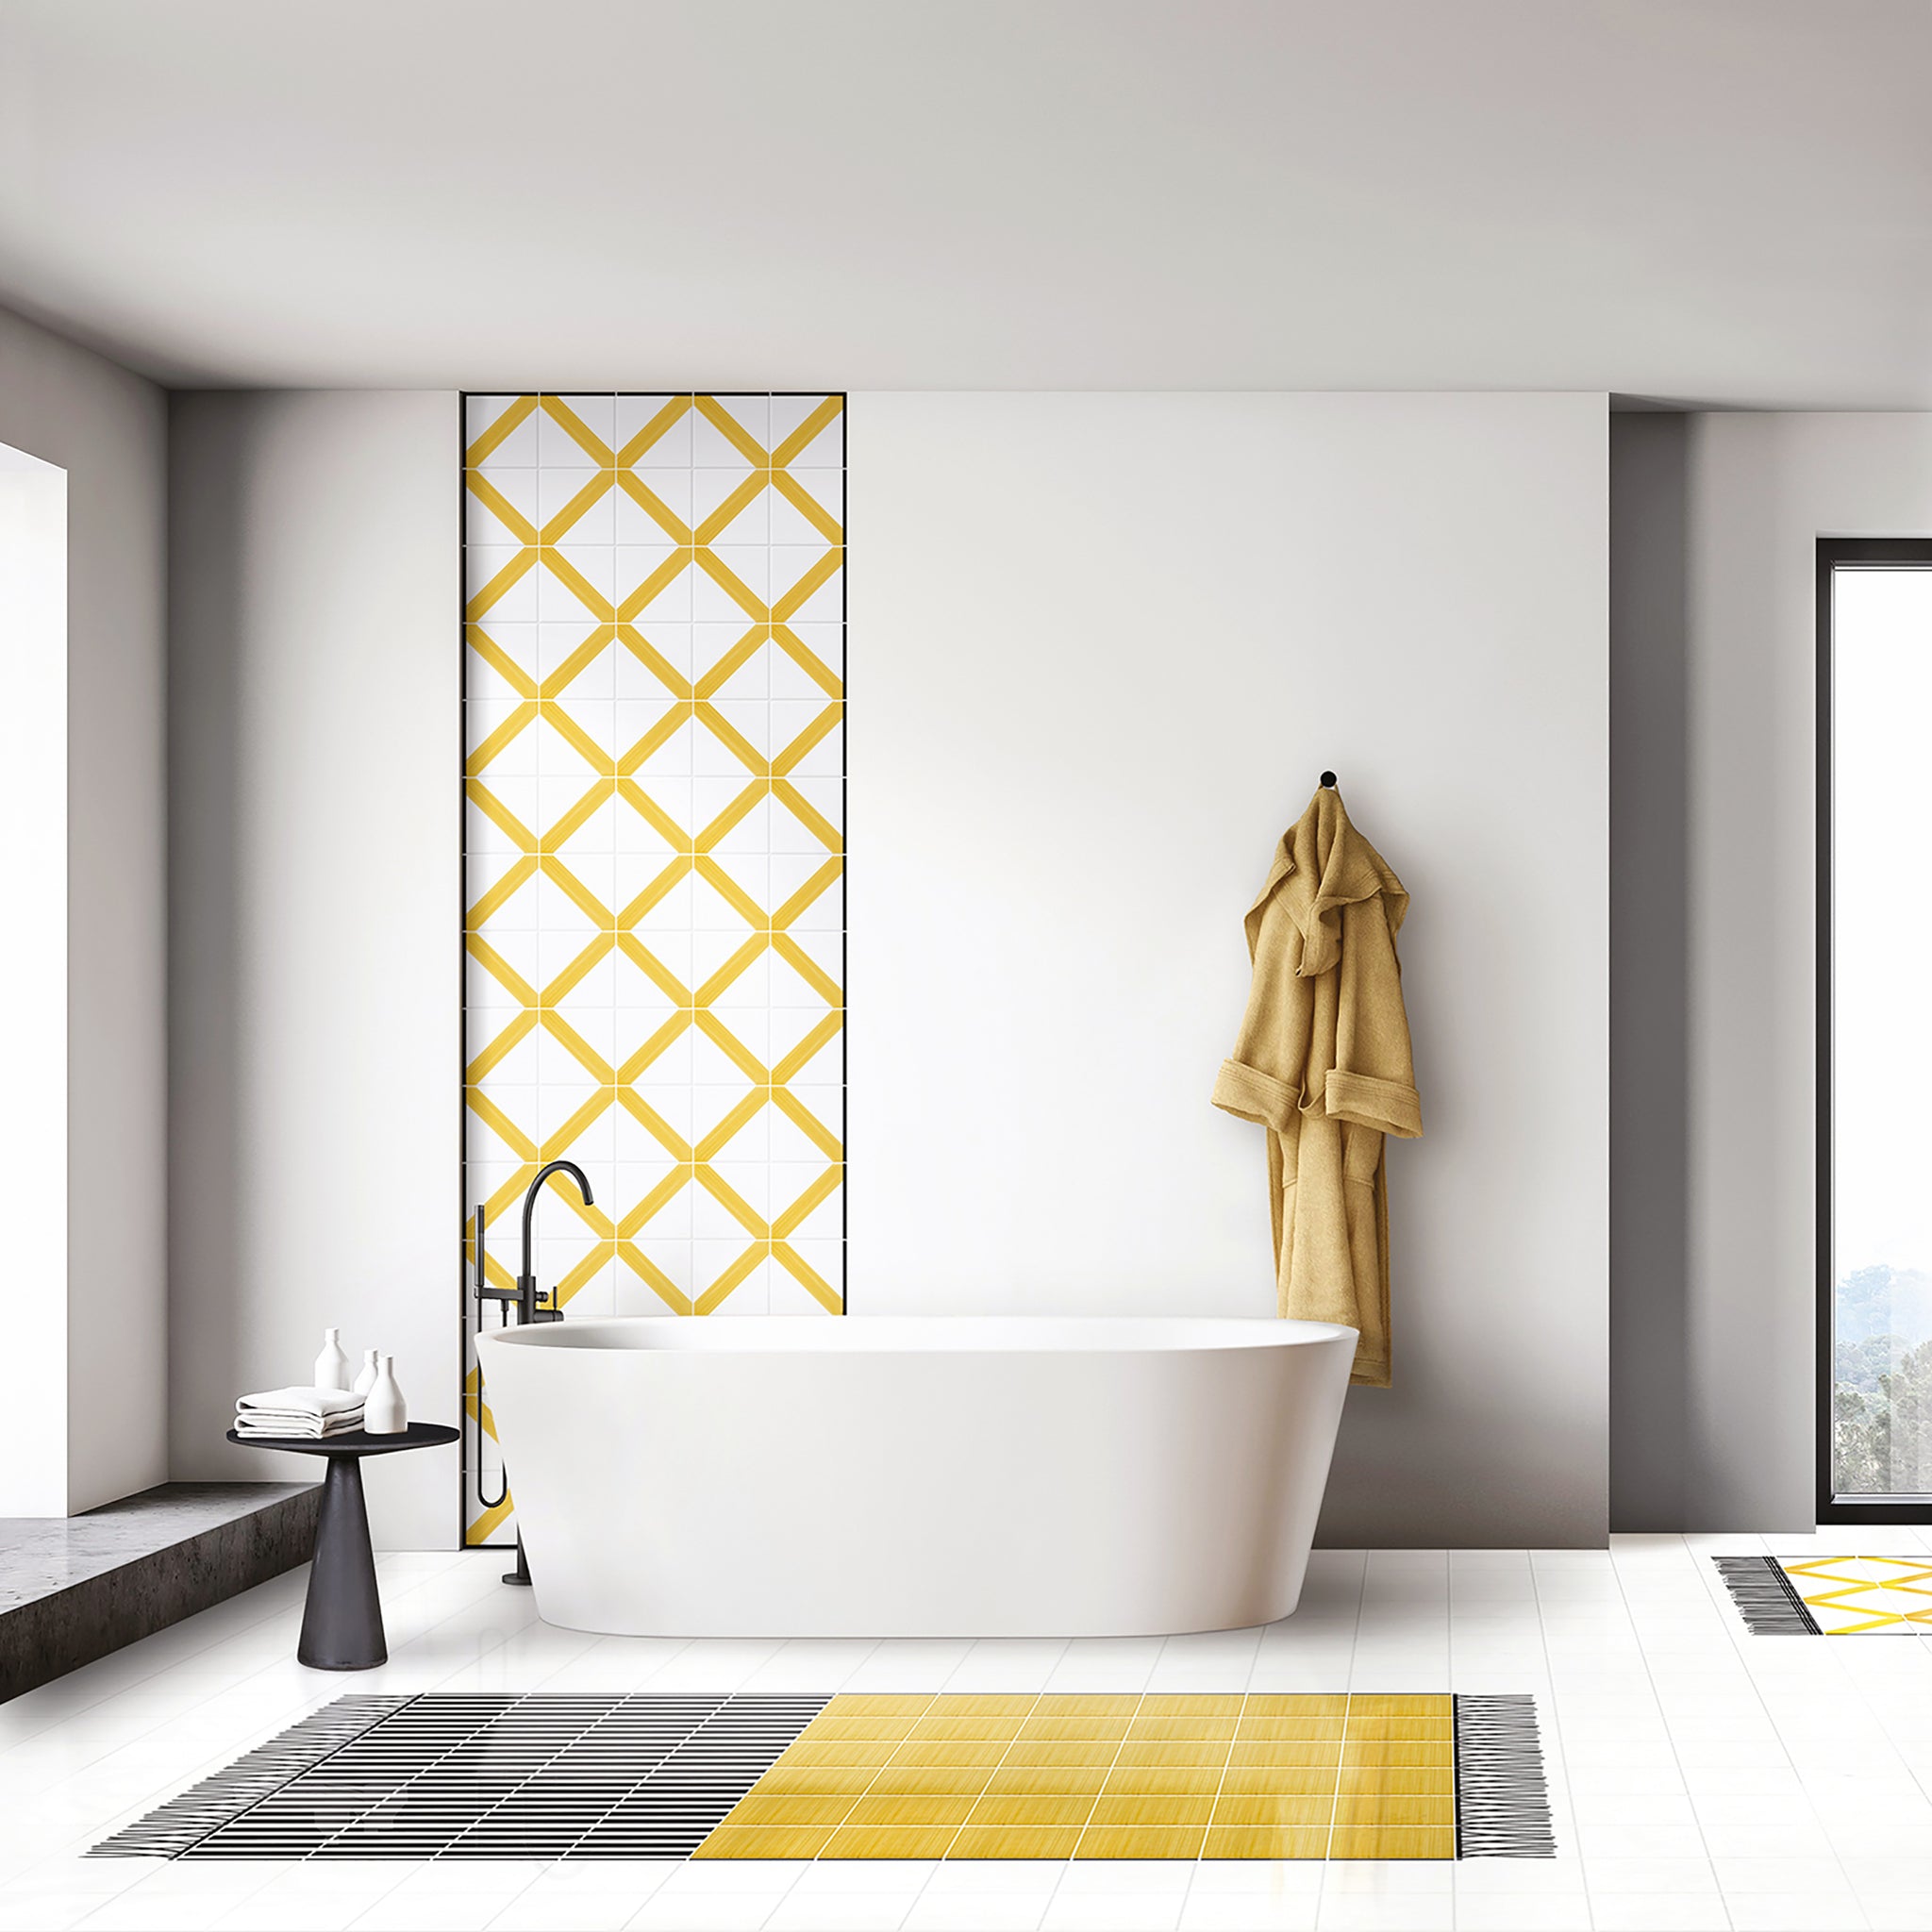 Carpet Total Yellow Ceramic Composition by Giuliano Andrea dell’Uva 120 X 60 - Alternative view 1